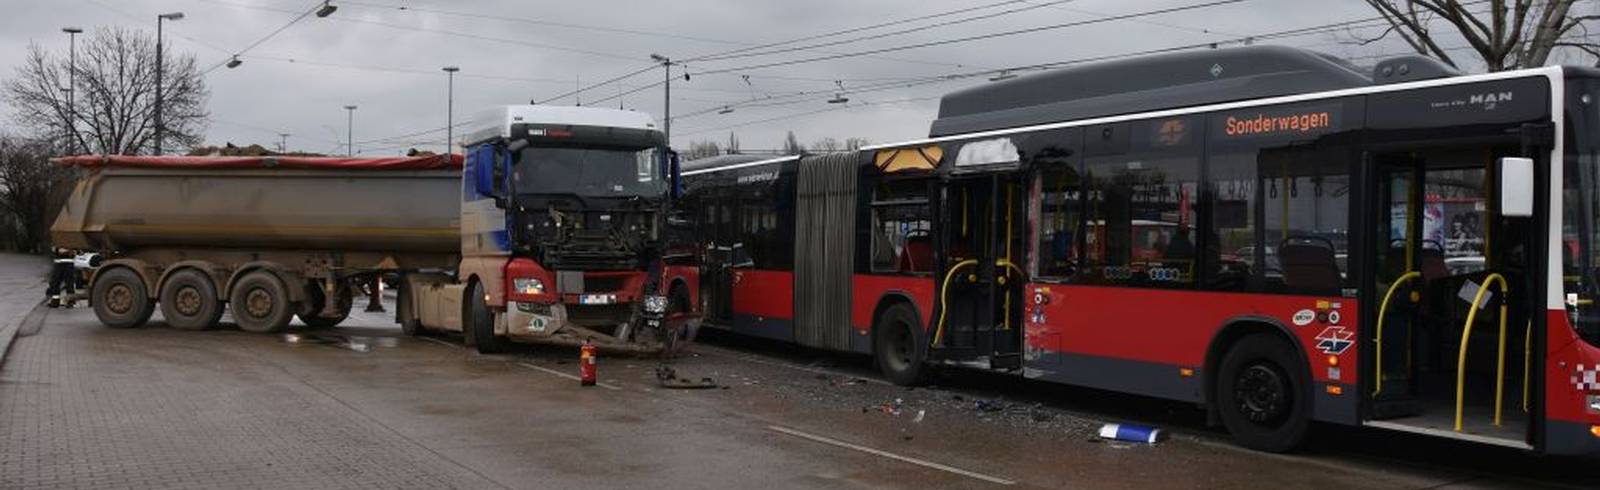 Lkw kollidiert mit Bus: Mehrere Schwerverletzte